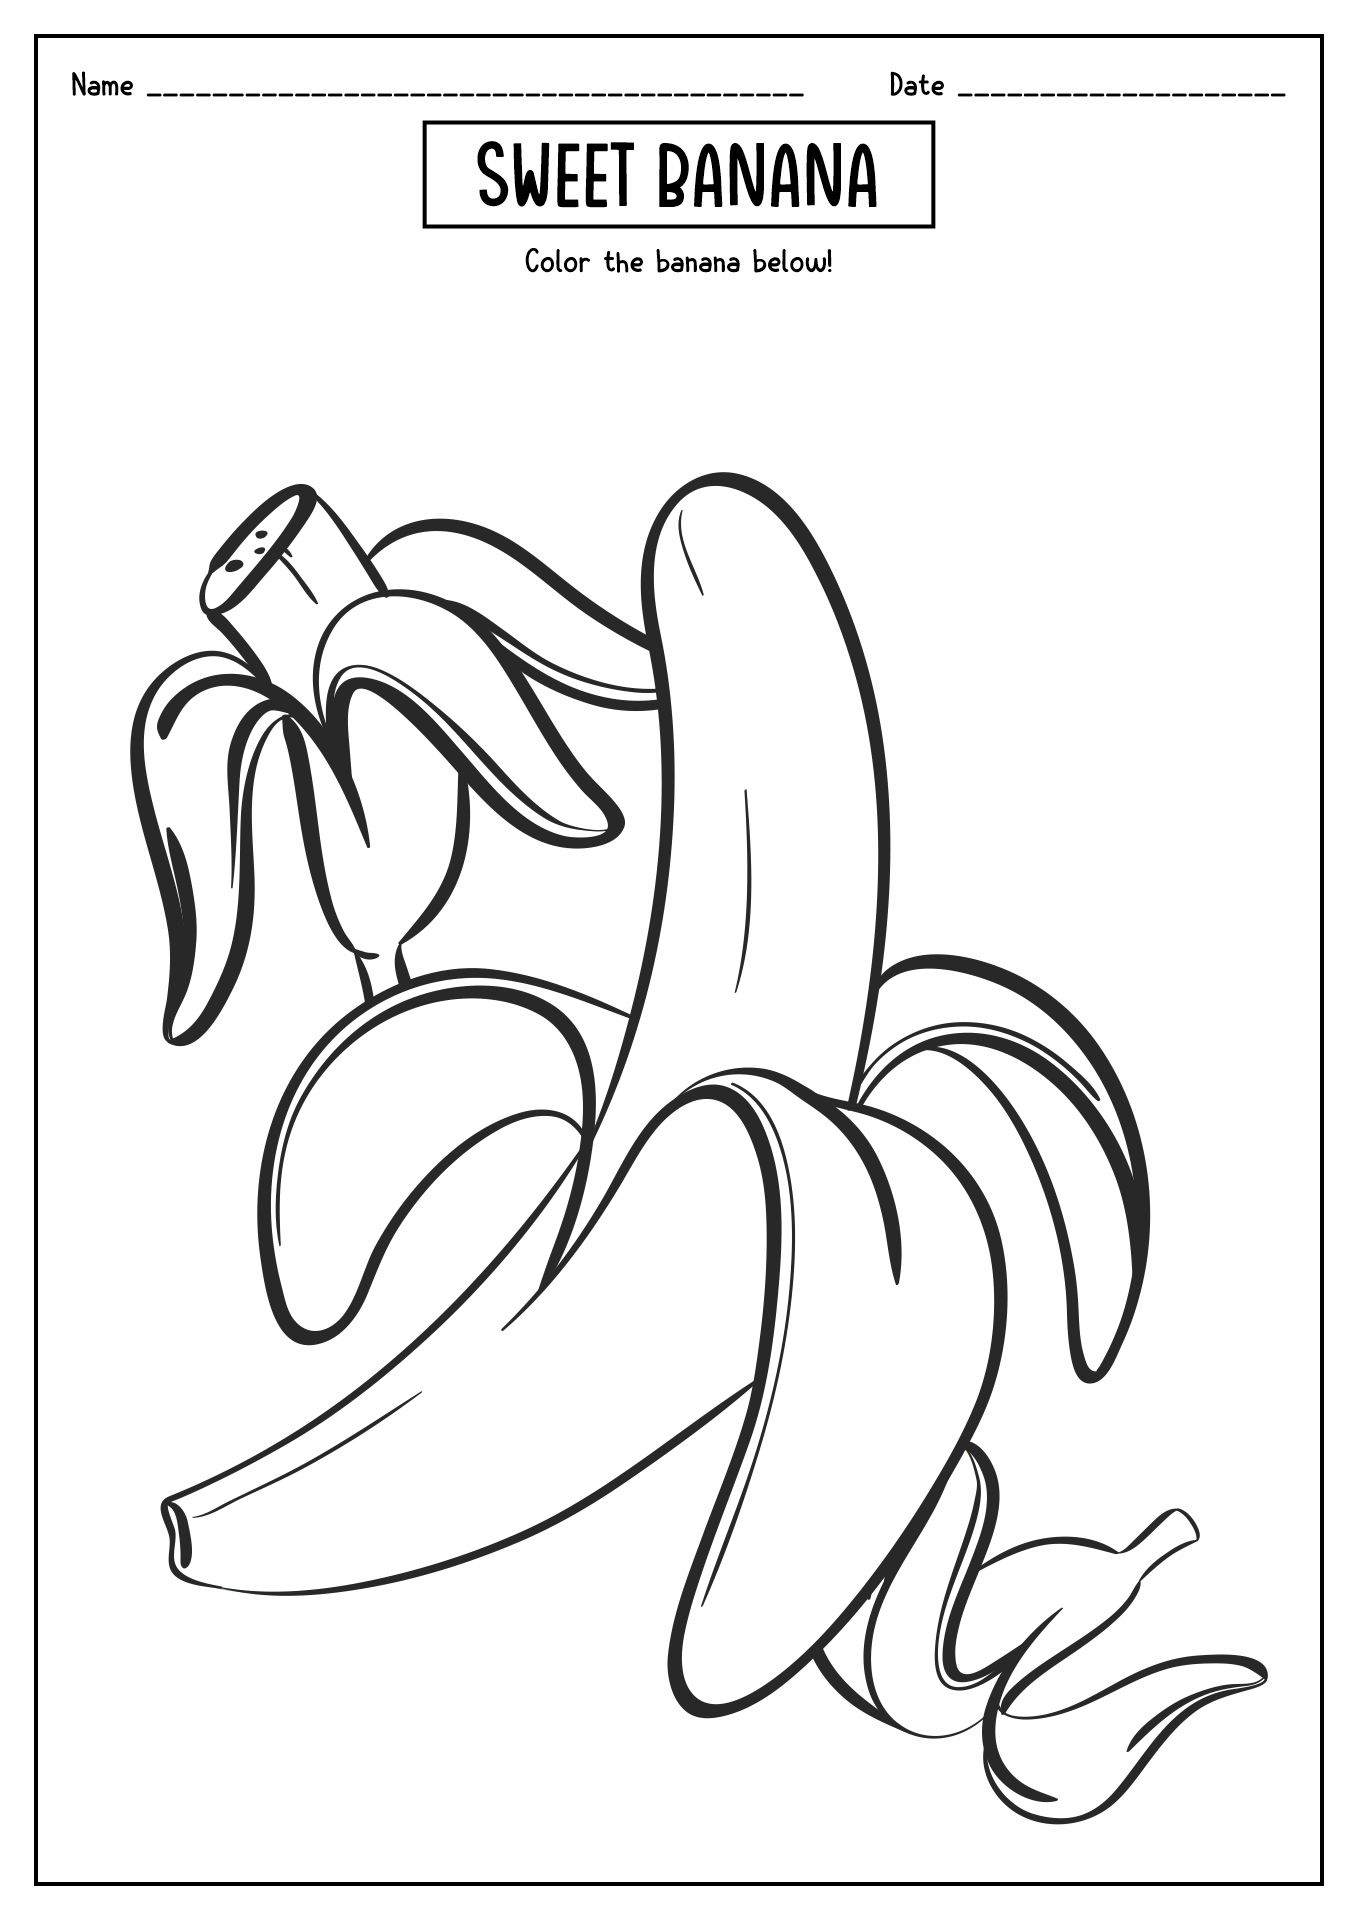 Banana Coloring Page Image